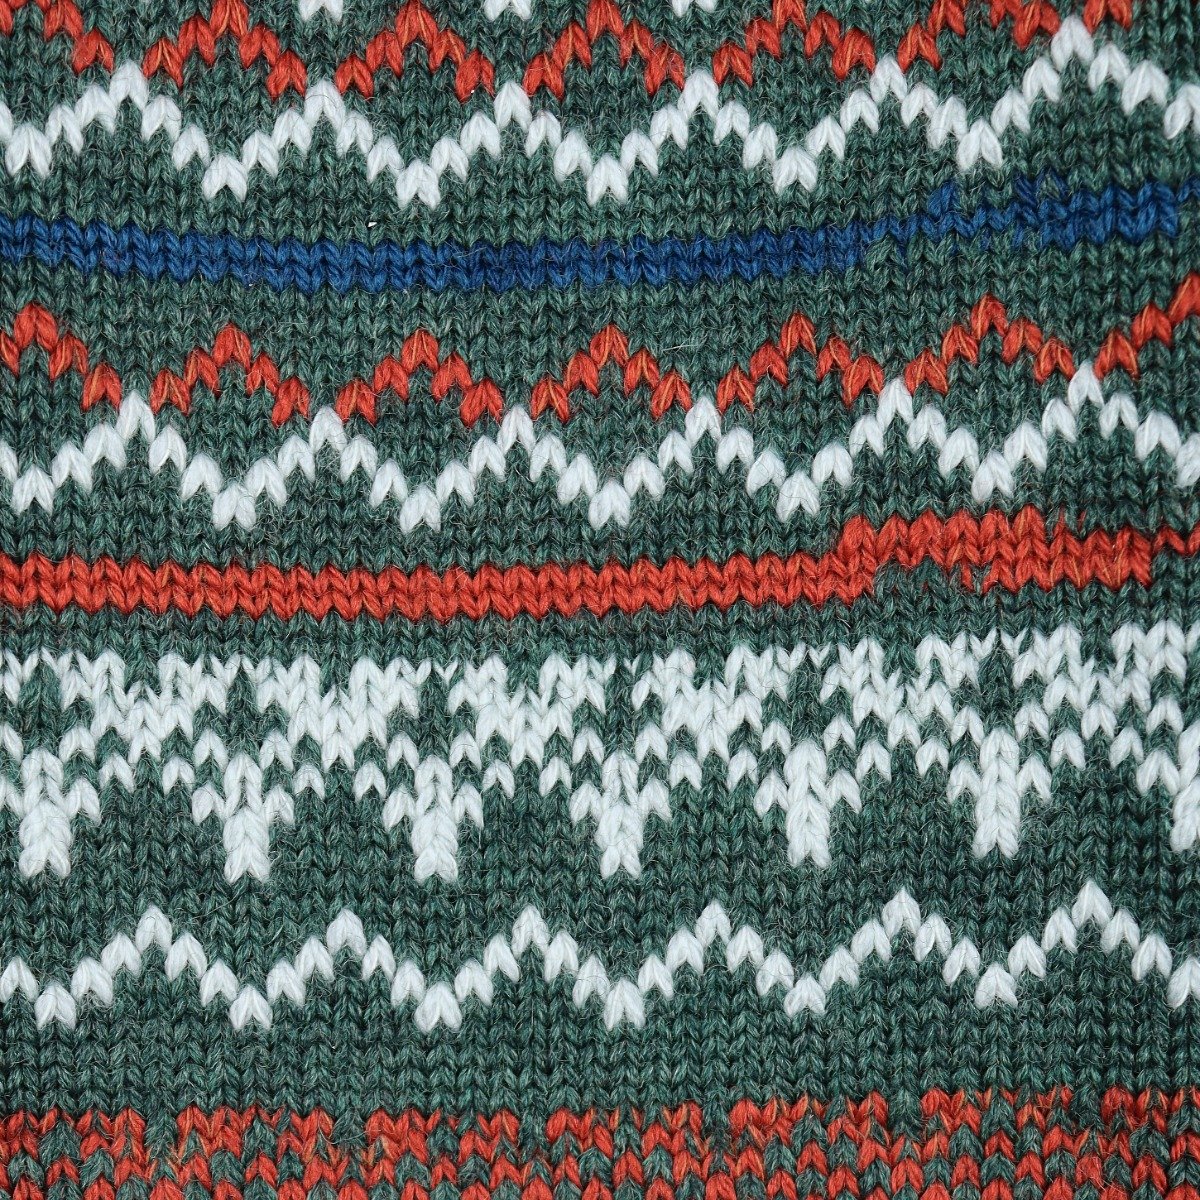 Corgi green Fair Isle merino wool socks